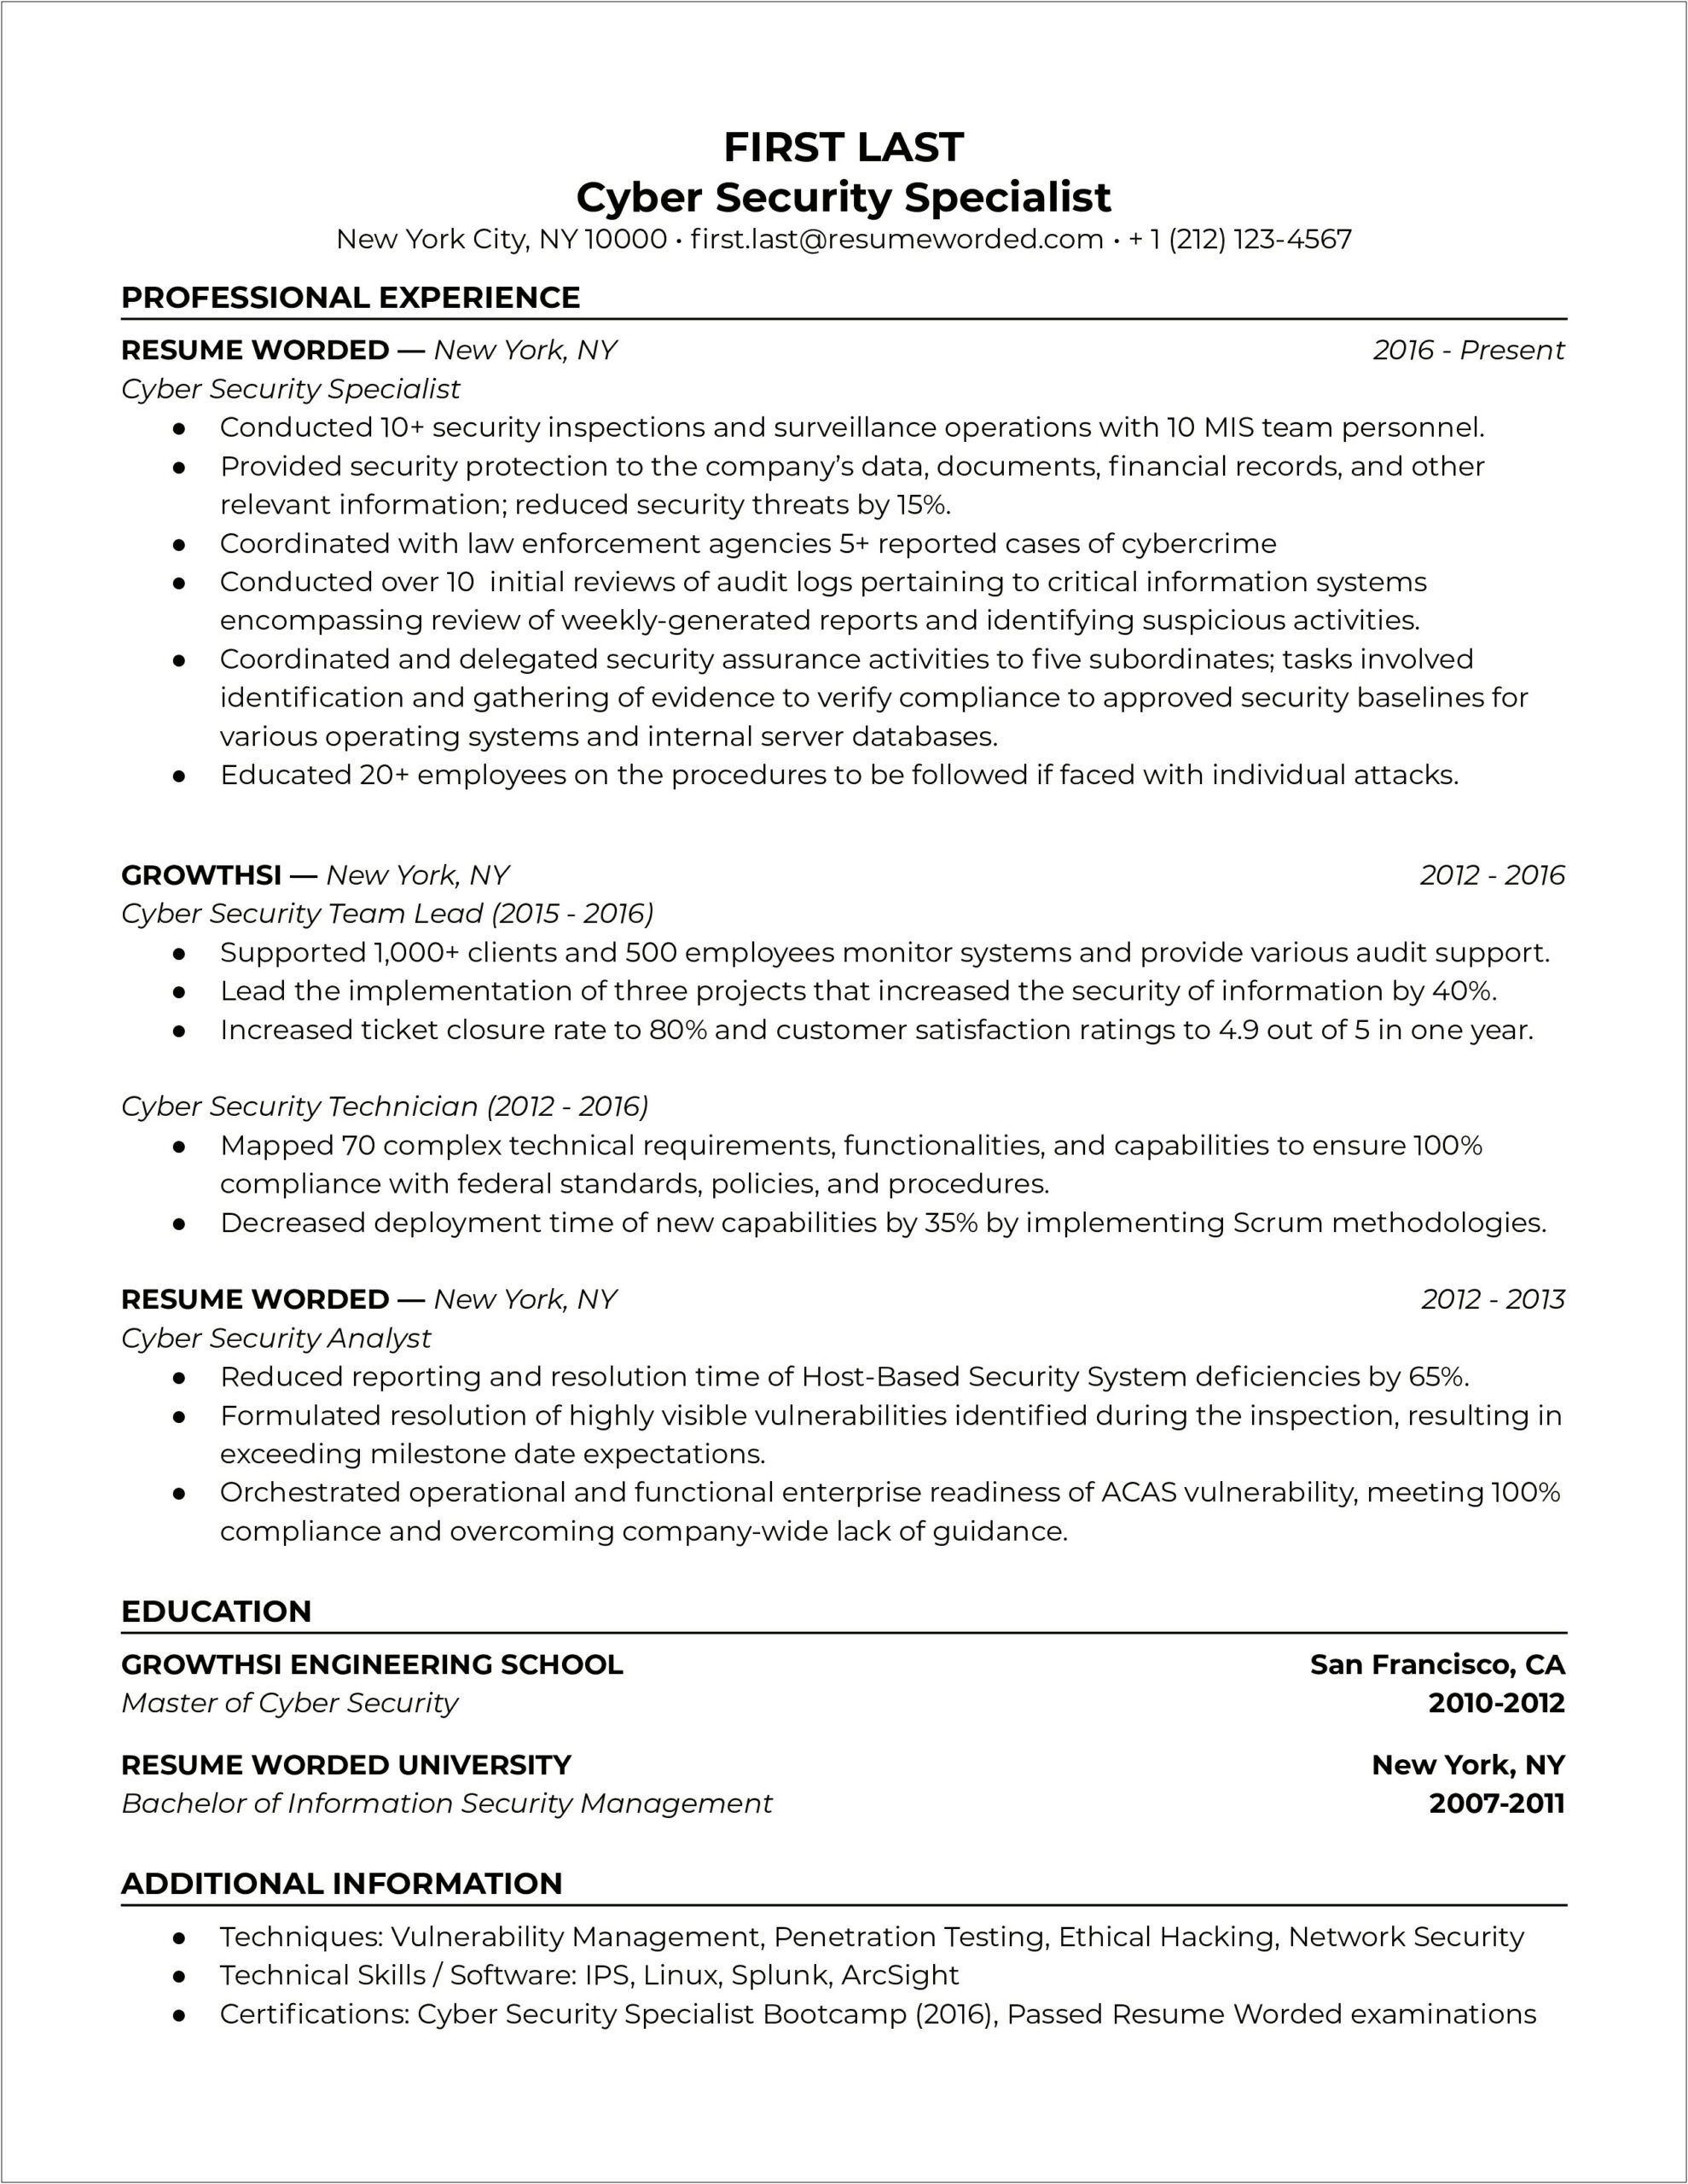 Corporate Security Job Description Resume